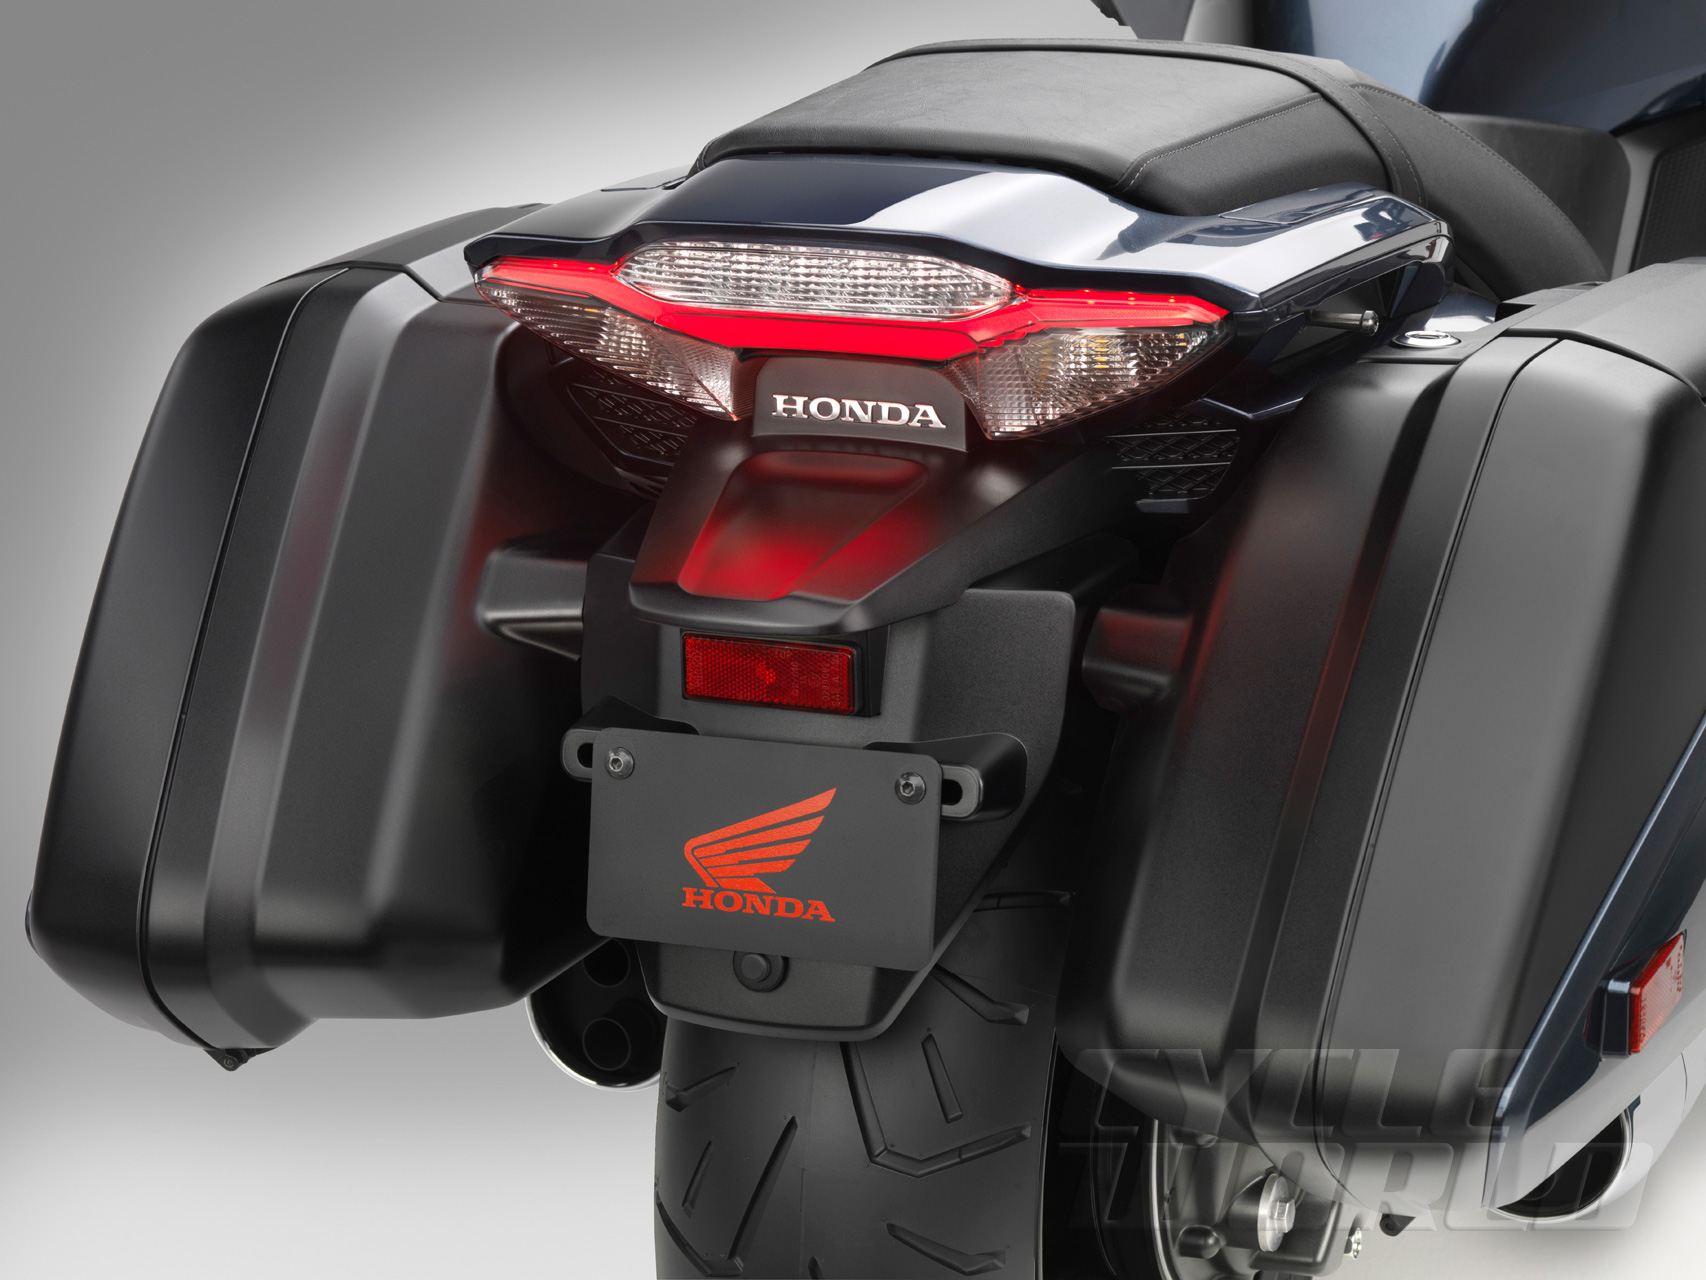 EICMA 2013: Honda CTX1300 mới thoải mái và hiện đại hơn 3